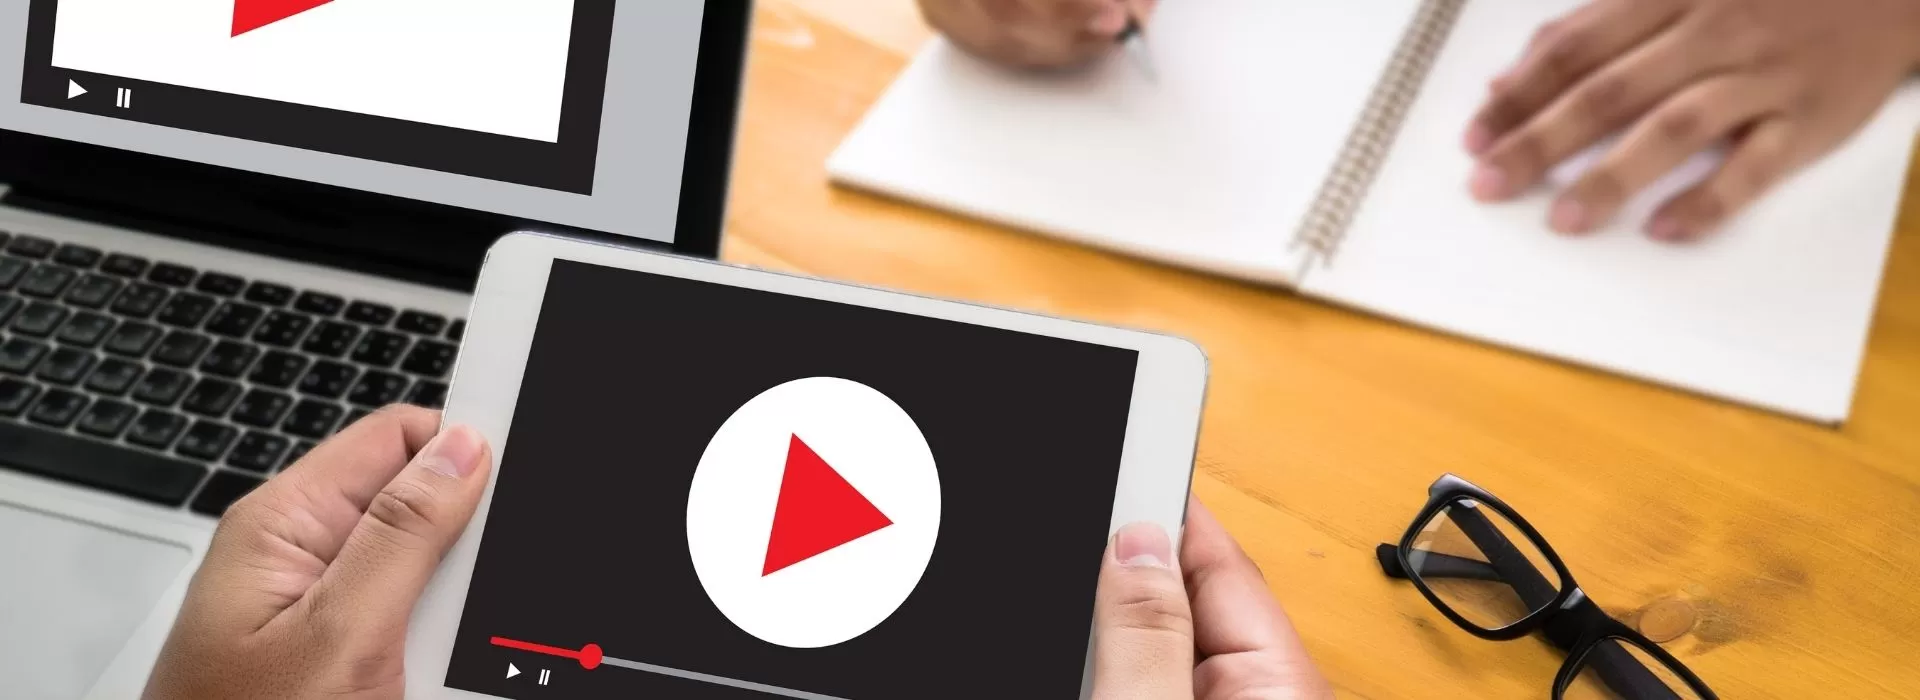 Youtube’da Video Açıklamaları Nasıl Yazılmalı?